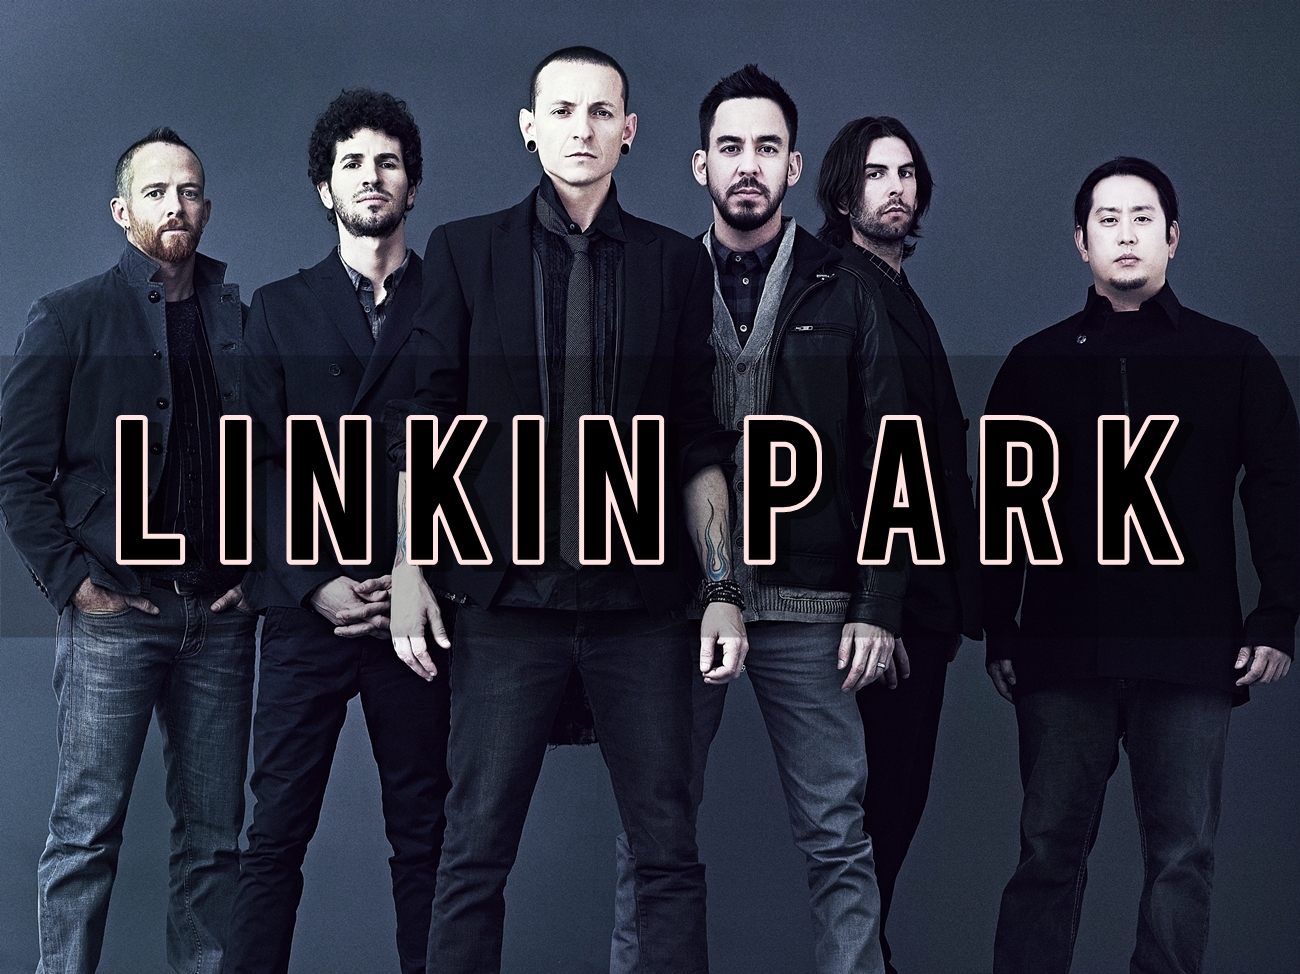 Linkin park в исполнении оркестра